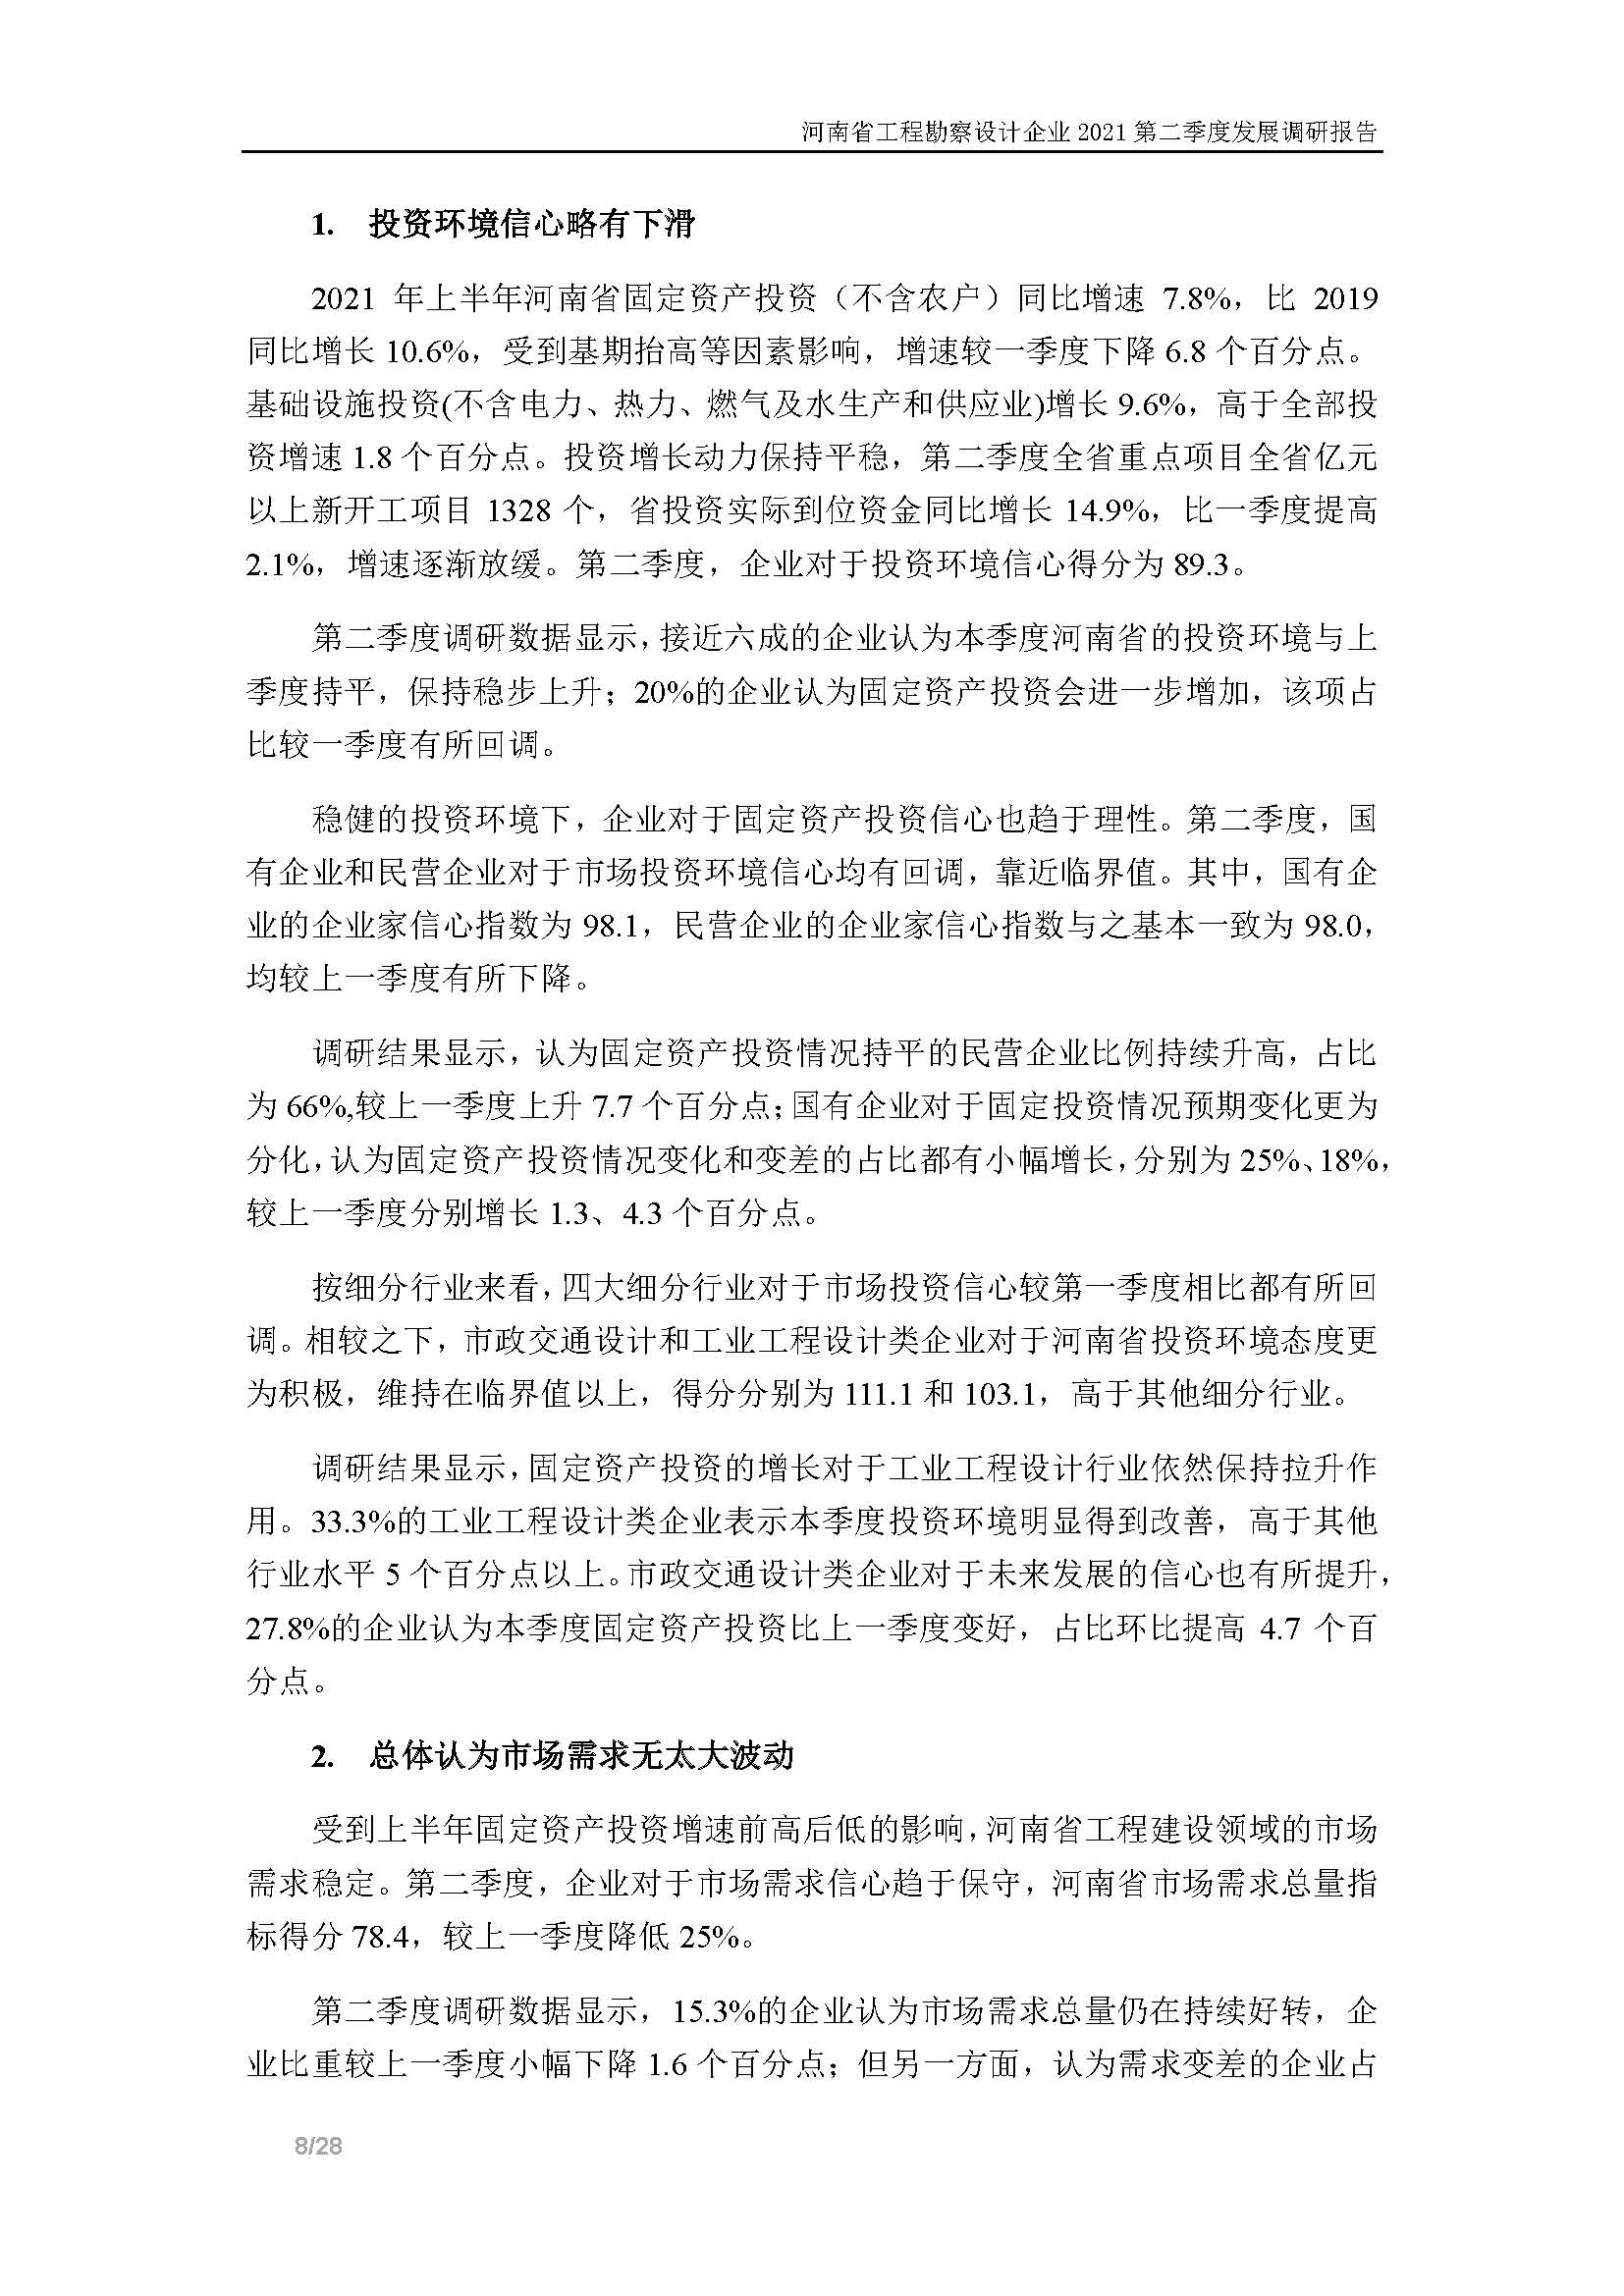 河南省工程勘察设计企业2021第二季度发展调研报告-公开版_页面_09.jpg